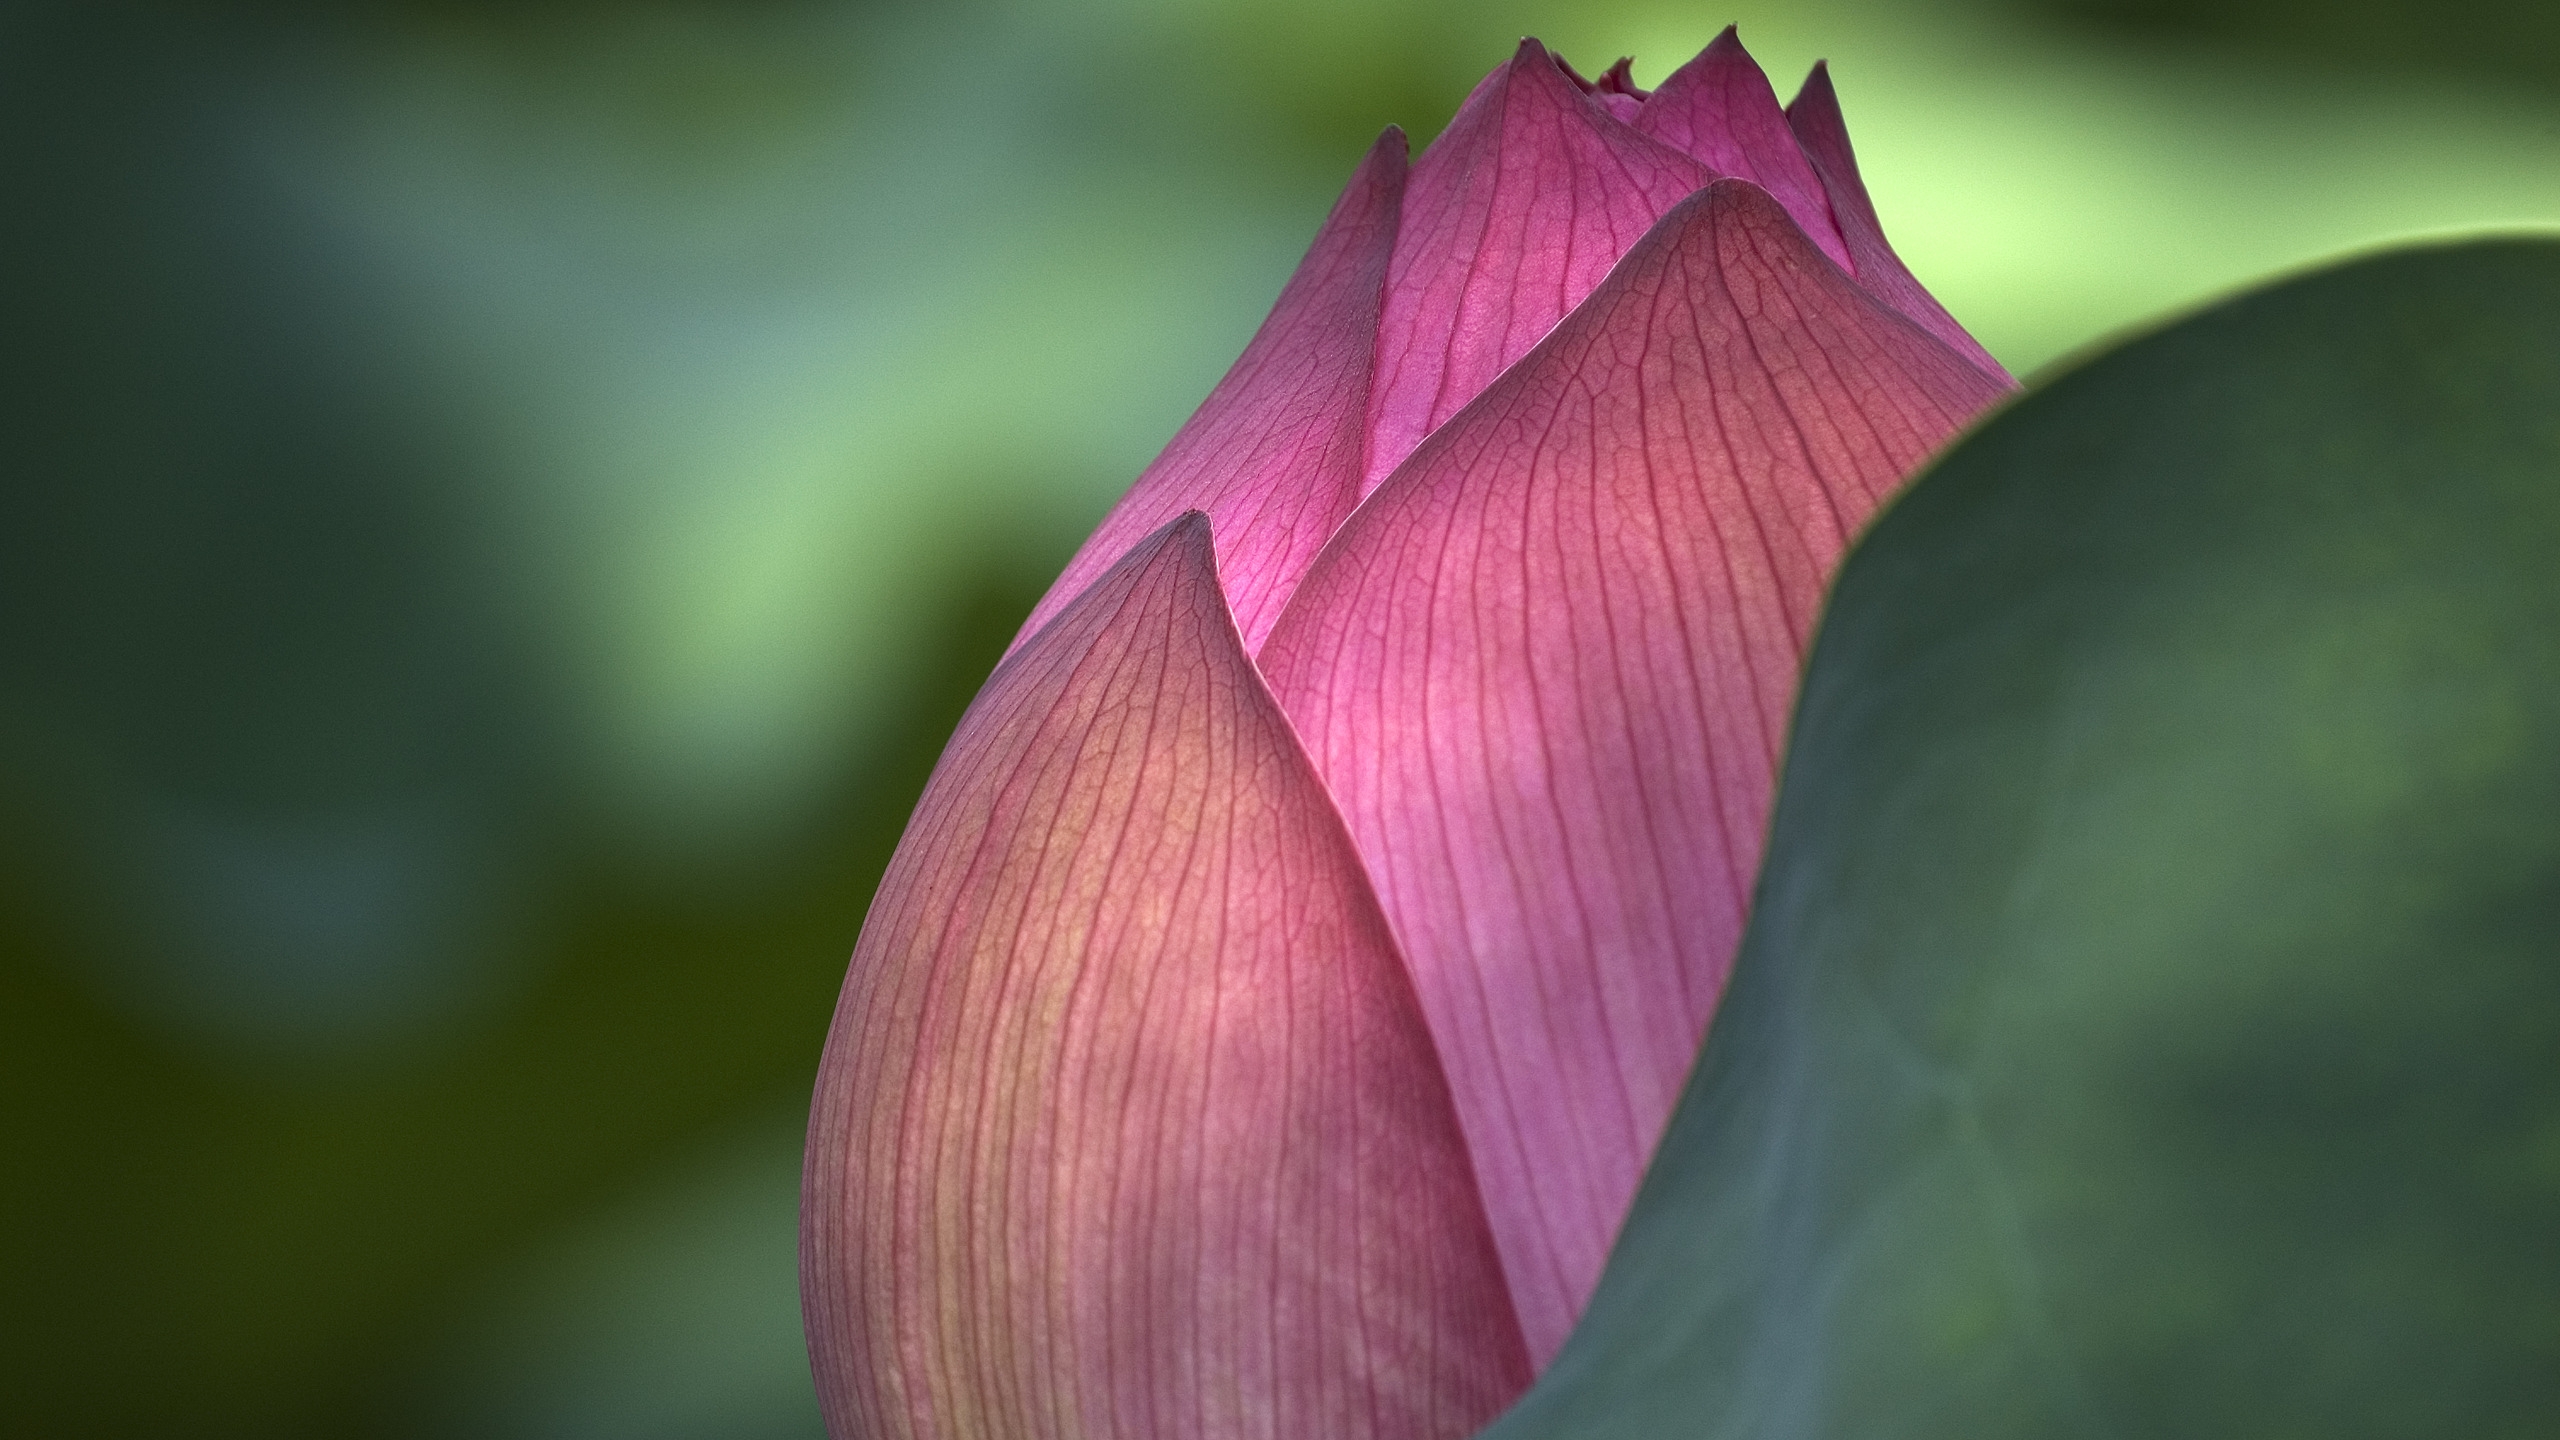 Lotus Flower for 2560x1440 HDTV resolution